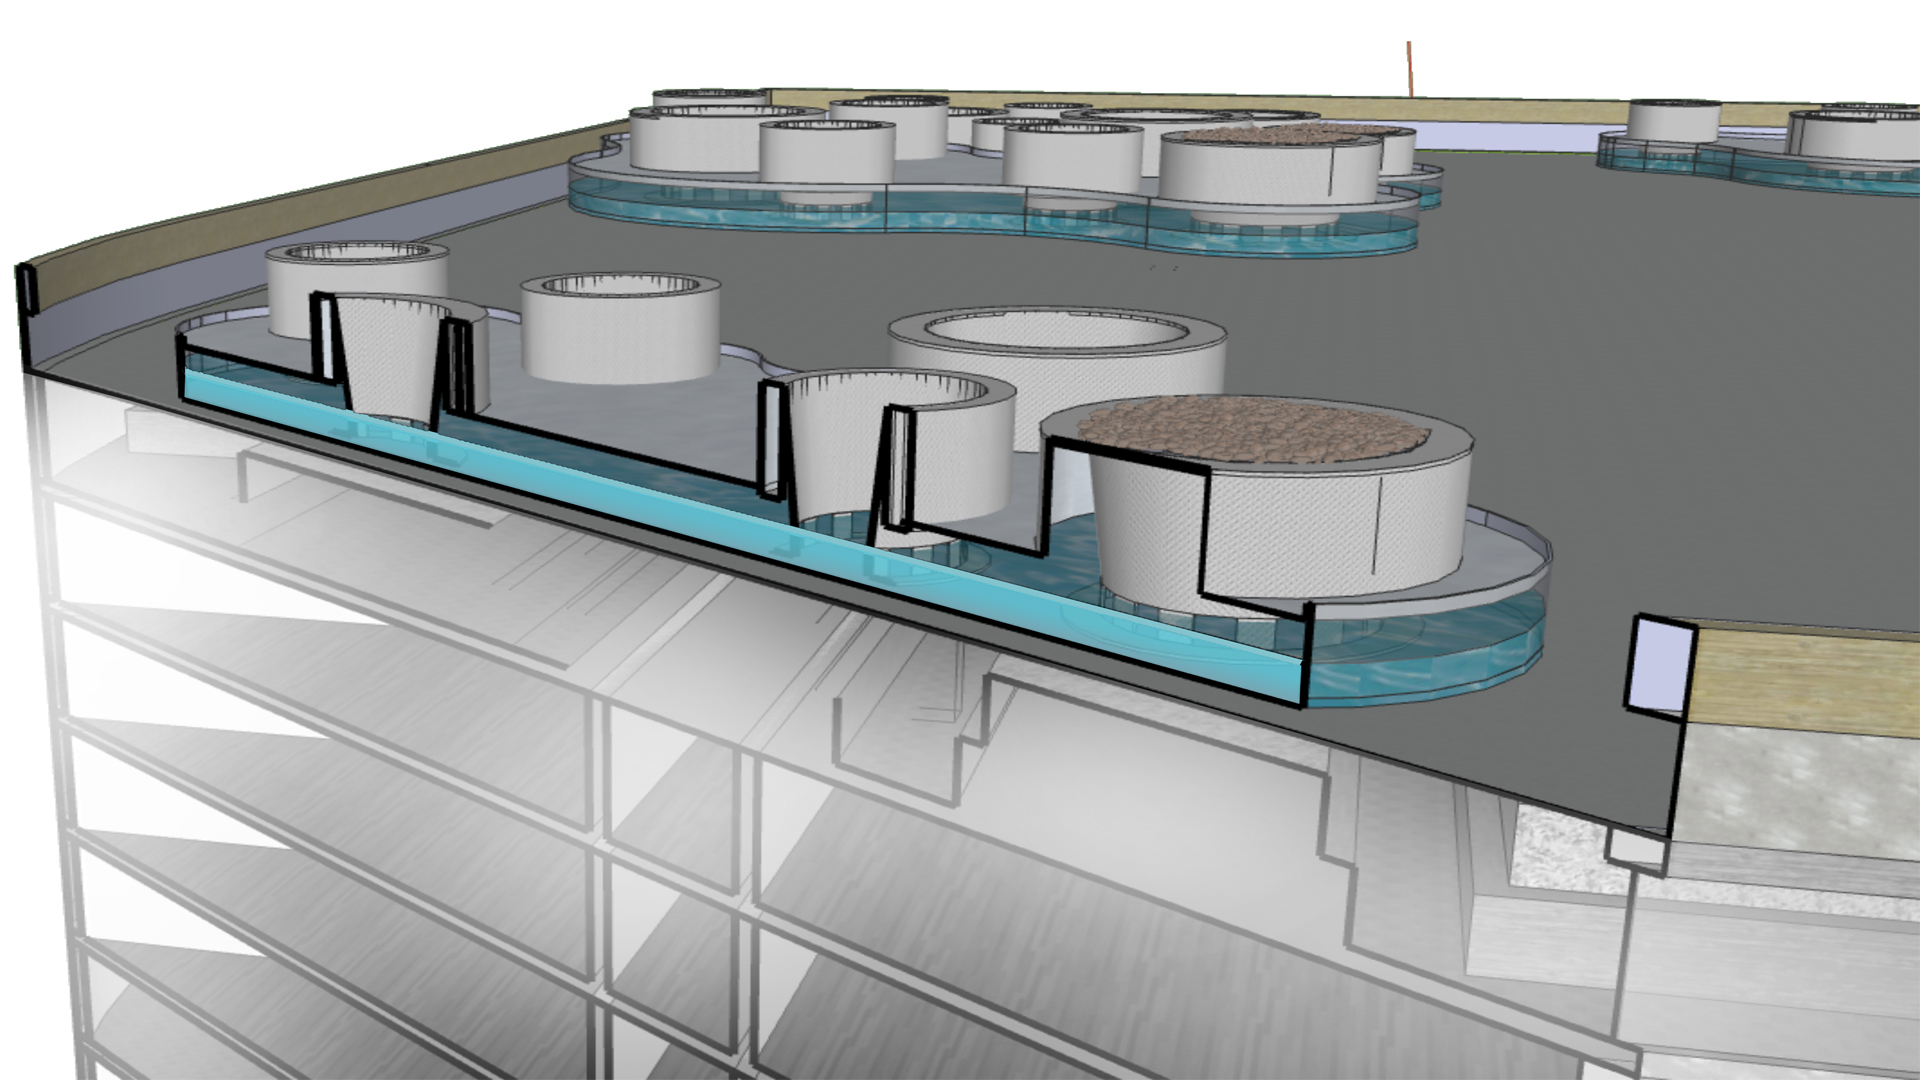 Intensive Dachbegrünungen mit Hydro Profi Line Beckenbegrünungssystemen